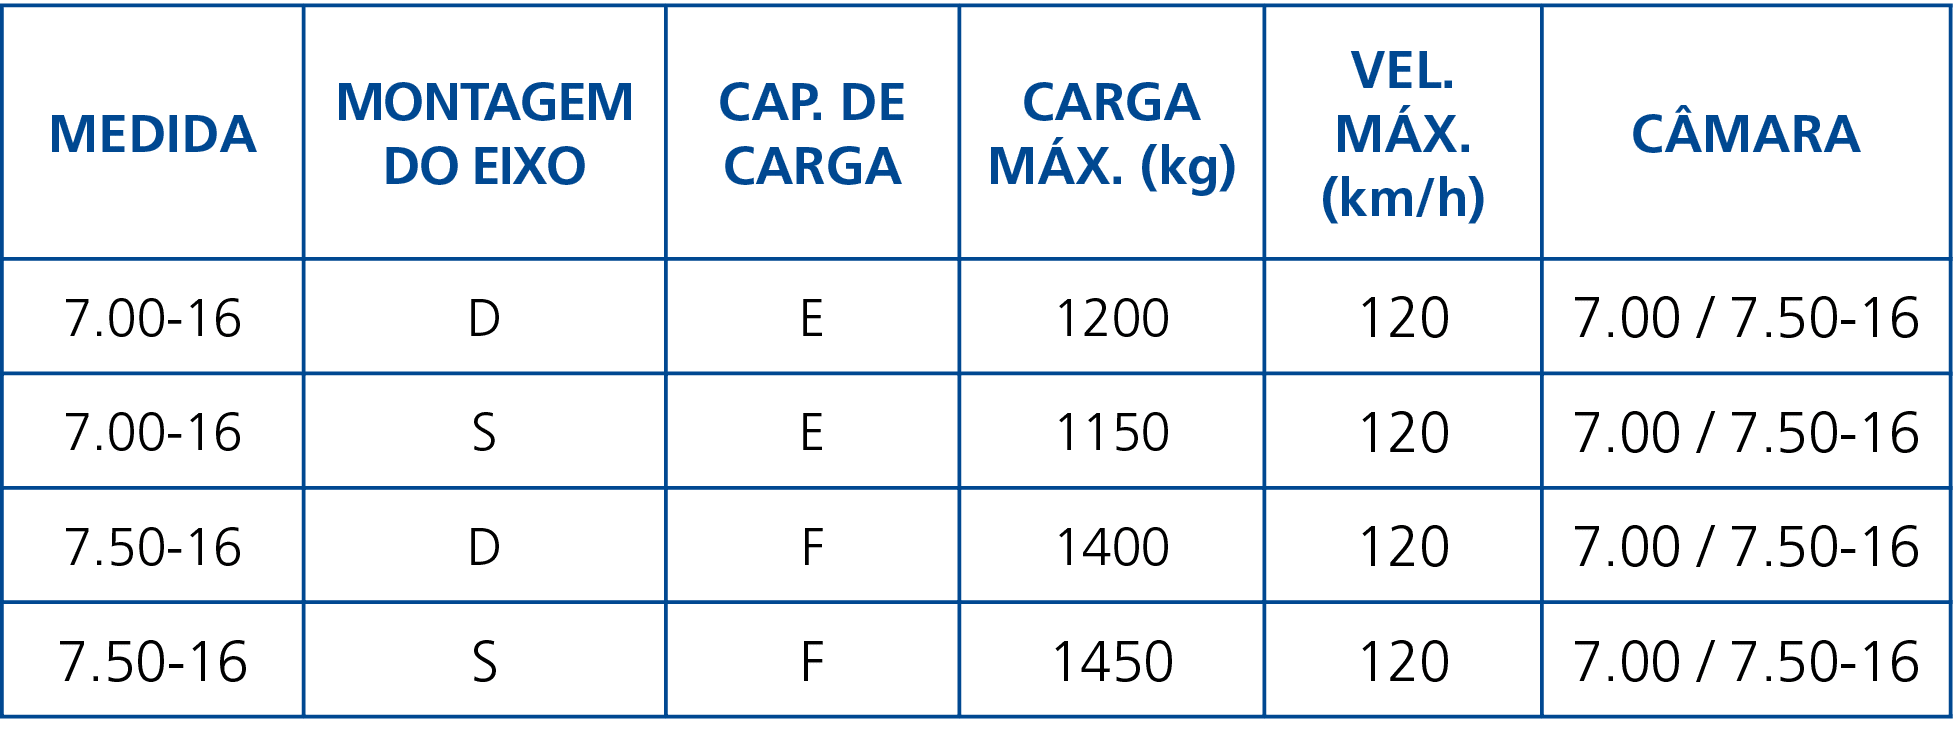 Medida,Montagem do Eixo,Cap  de Carga,Carga Máx  (kg),Vel  Máx  (km h),Câmara,7 00-16,D,E,1200,120,7 00   7 50-16,7 0   